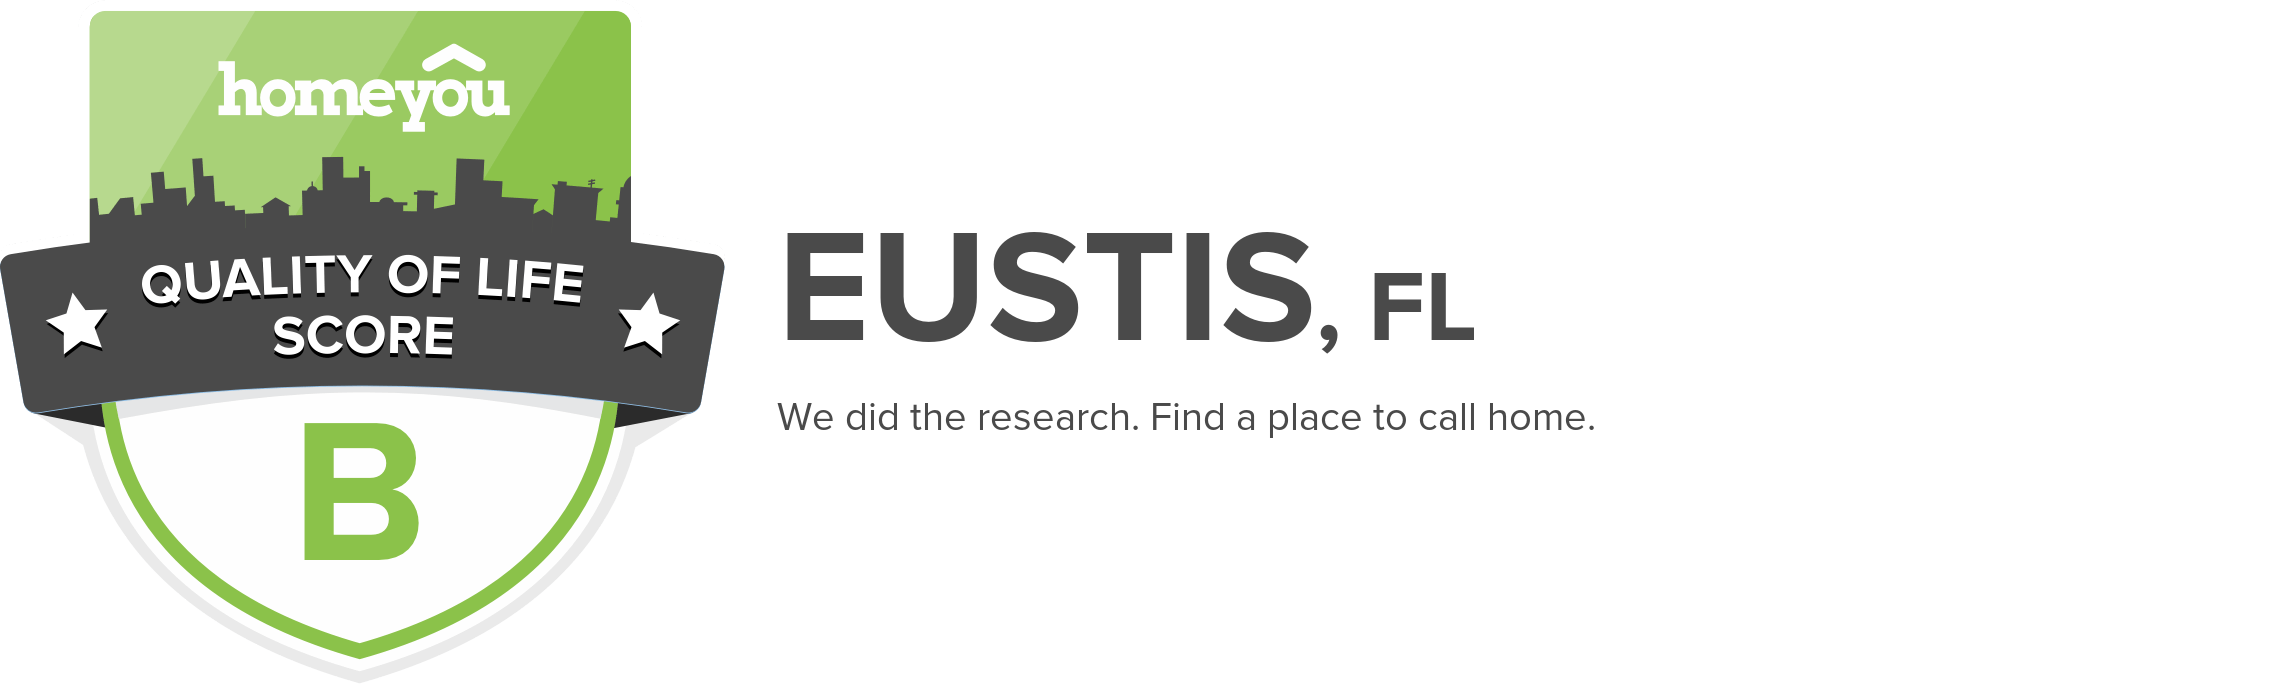 Eustis, FL